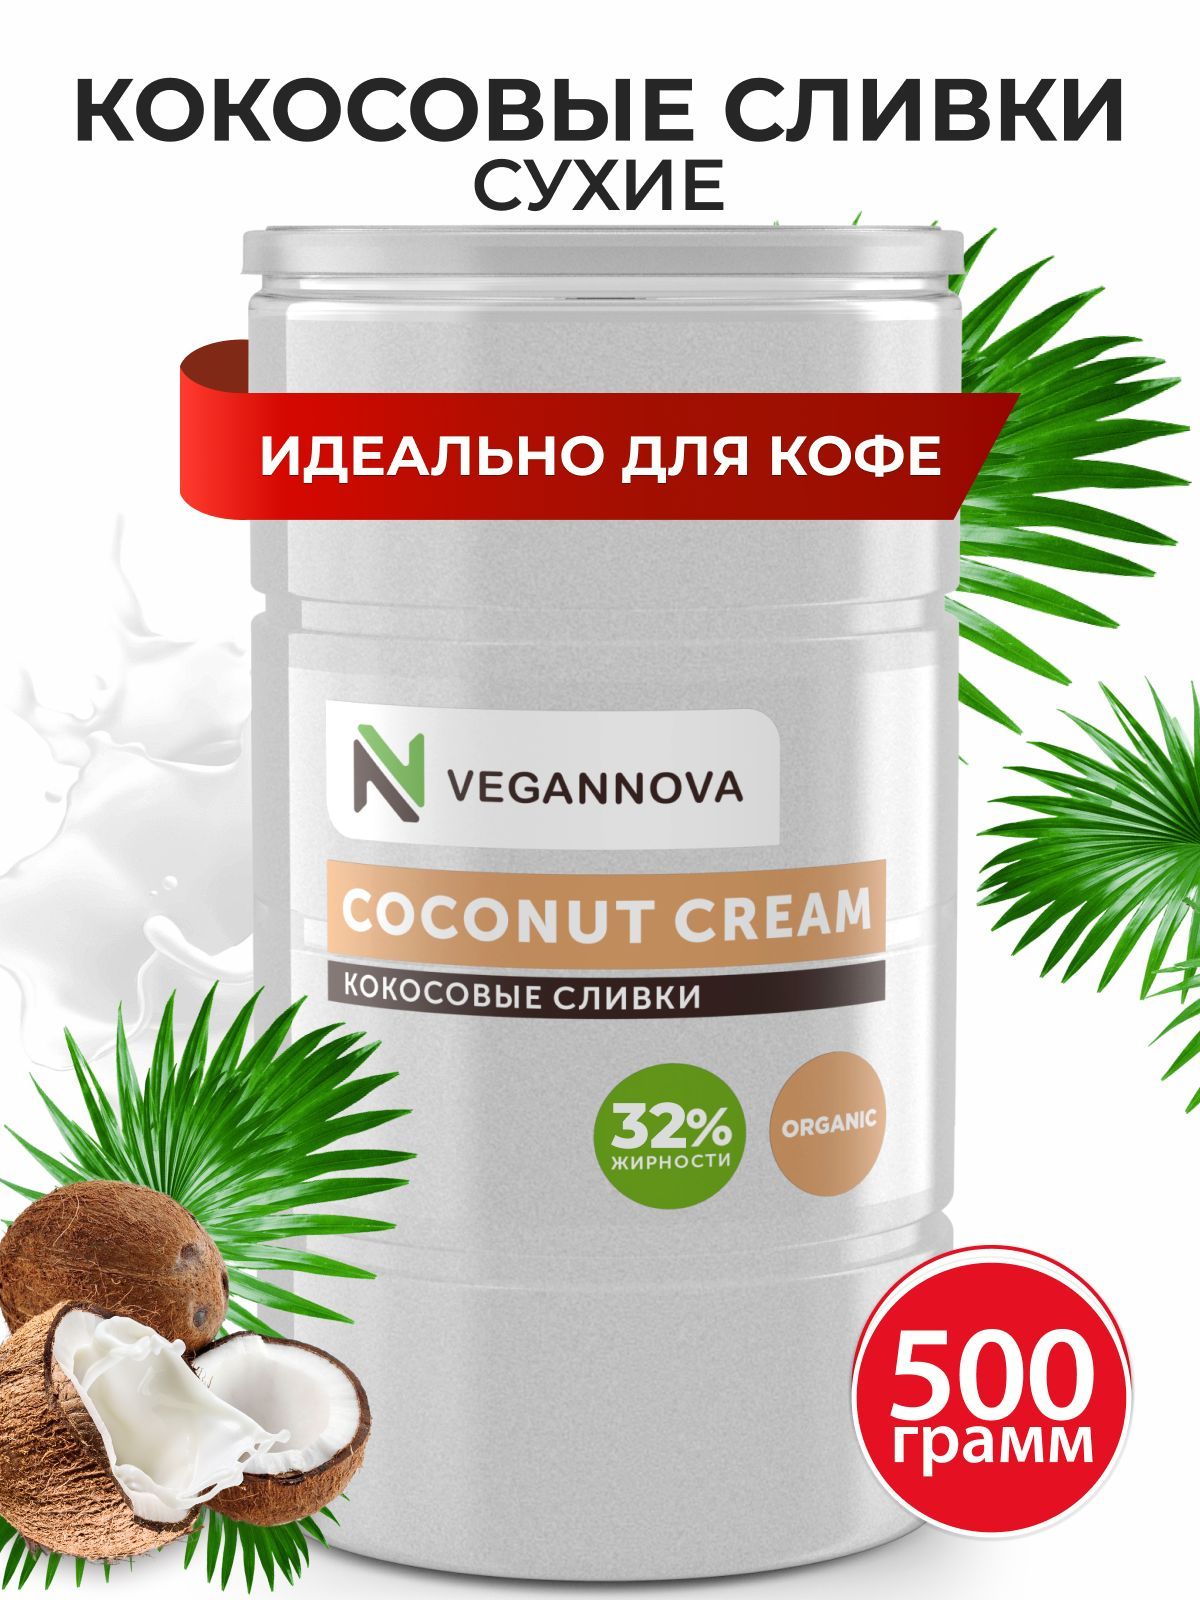 VeganNova Сухие кокосовые сливки для кофе и чая, растительные, 32% жирности, 500 г